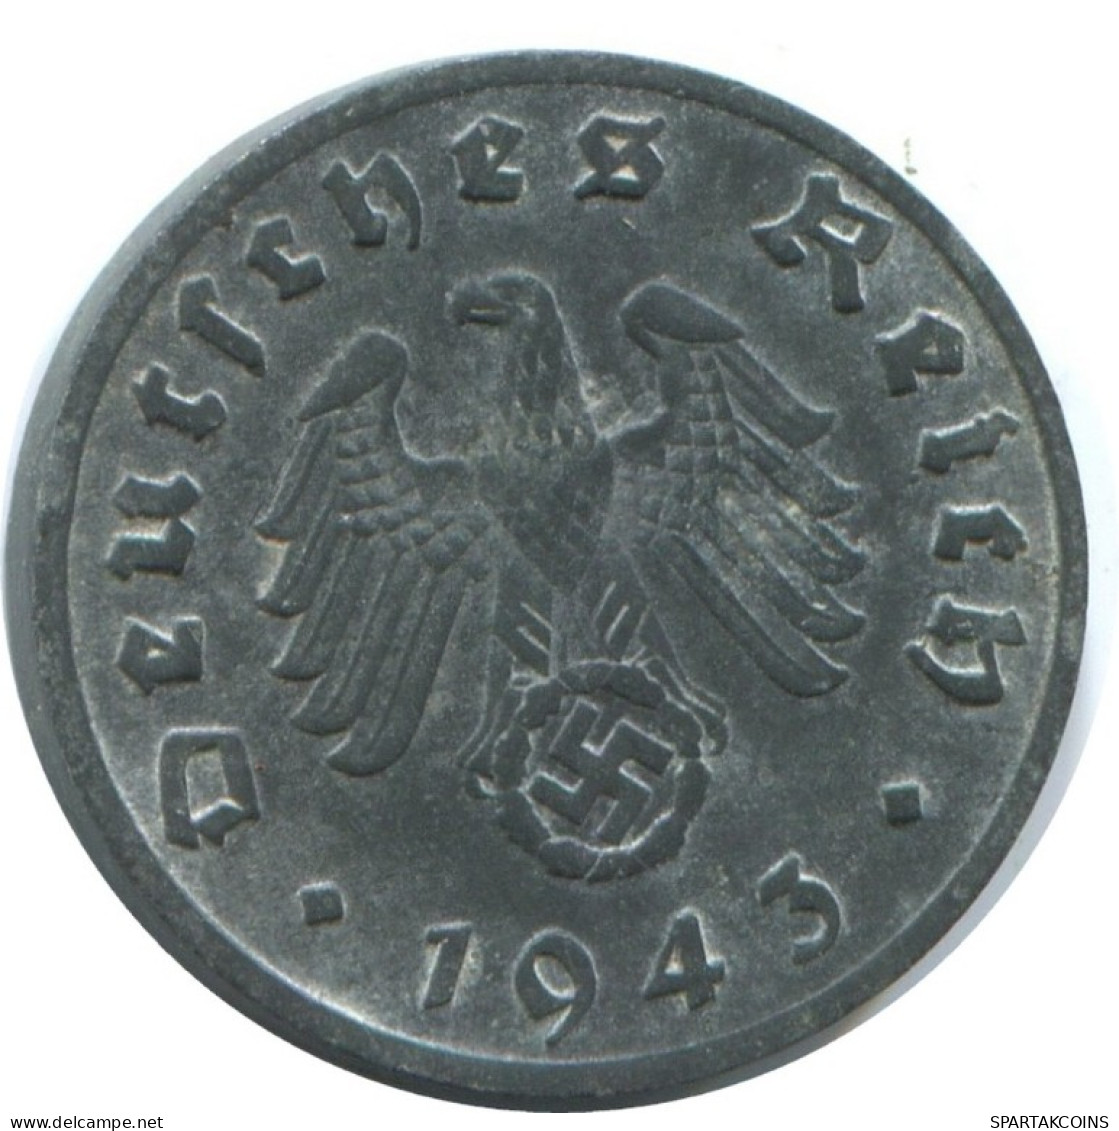 1 REICHSPFENNIG 1943 D GERMANY Coin #AE259.U.A - 1 Reichspfennig